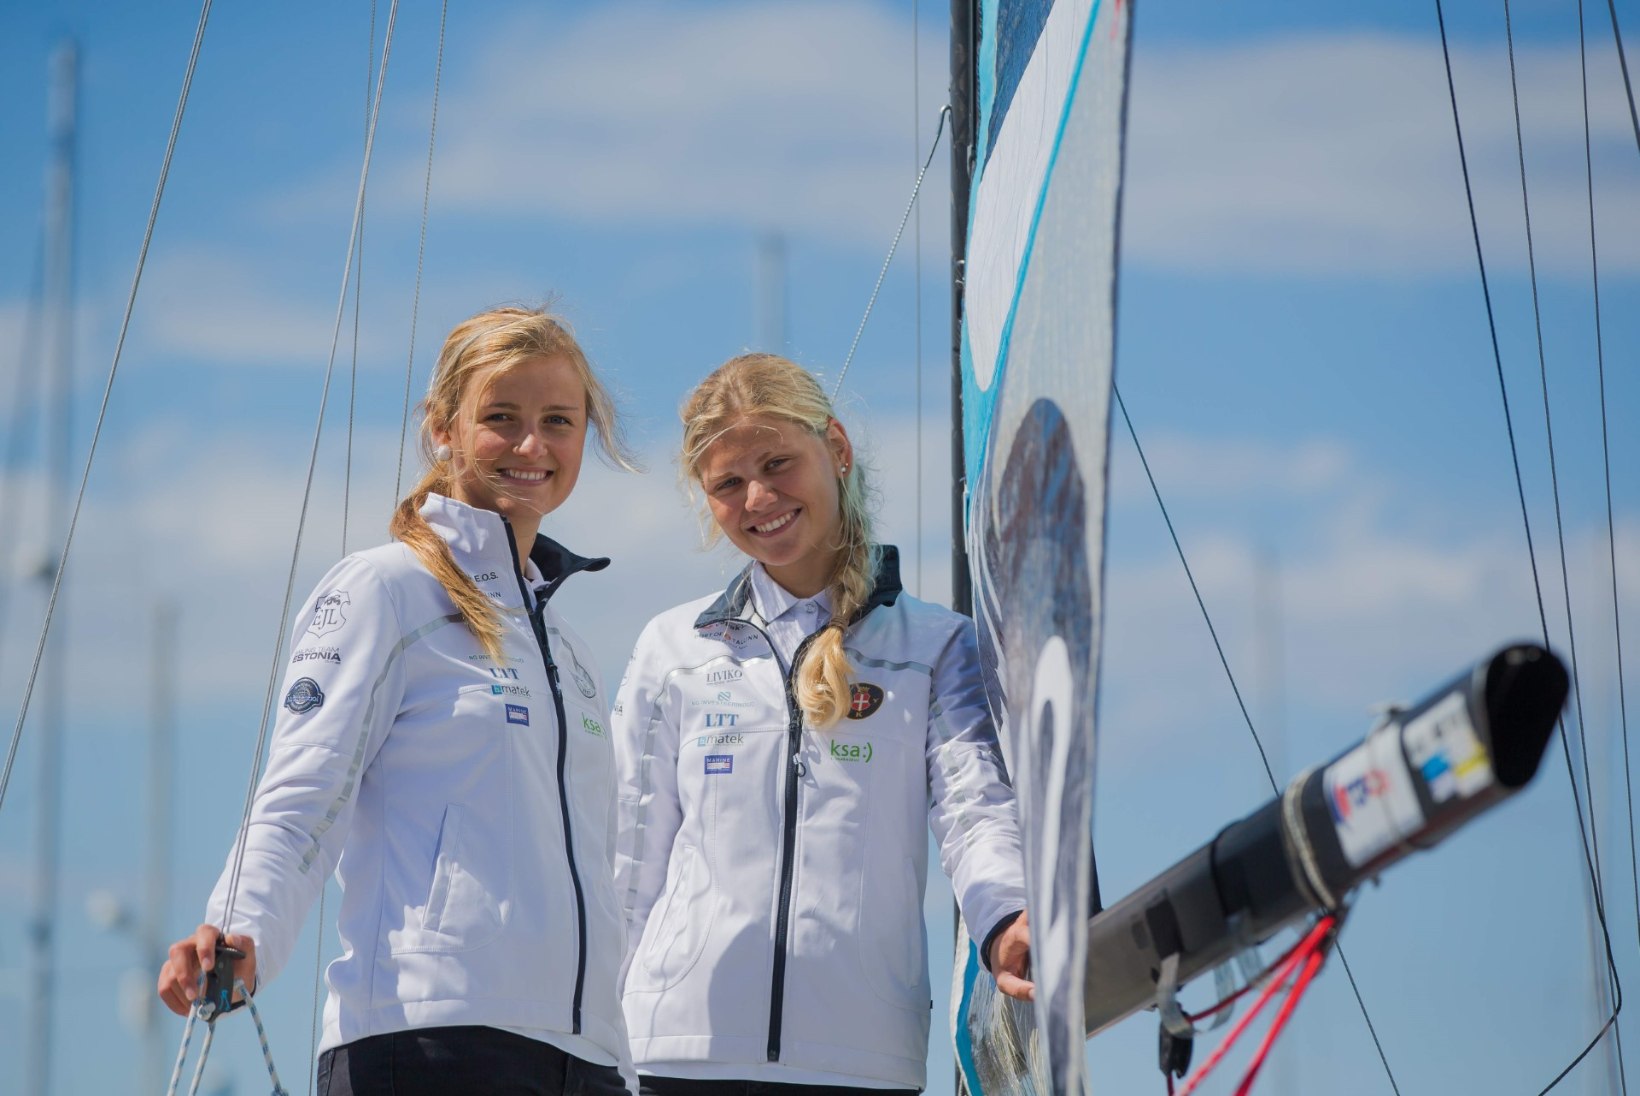 Eesti noor olümpiatiim, kes on maailmameistreid juba võitnud